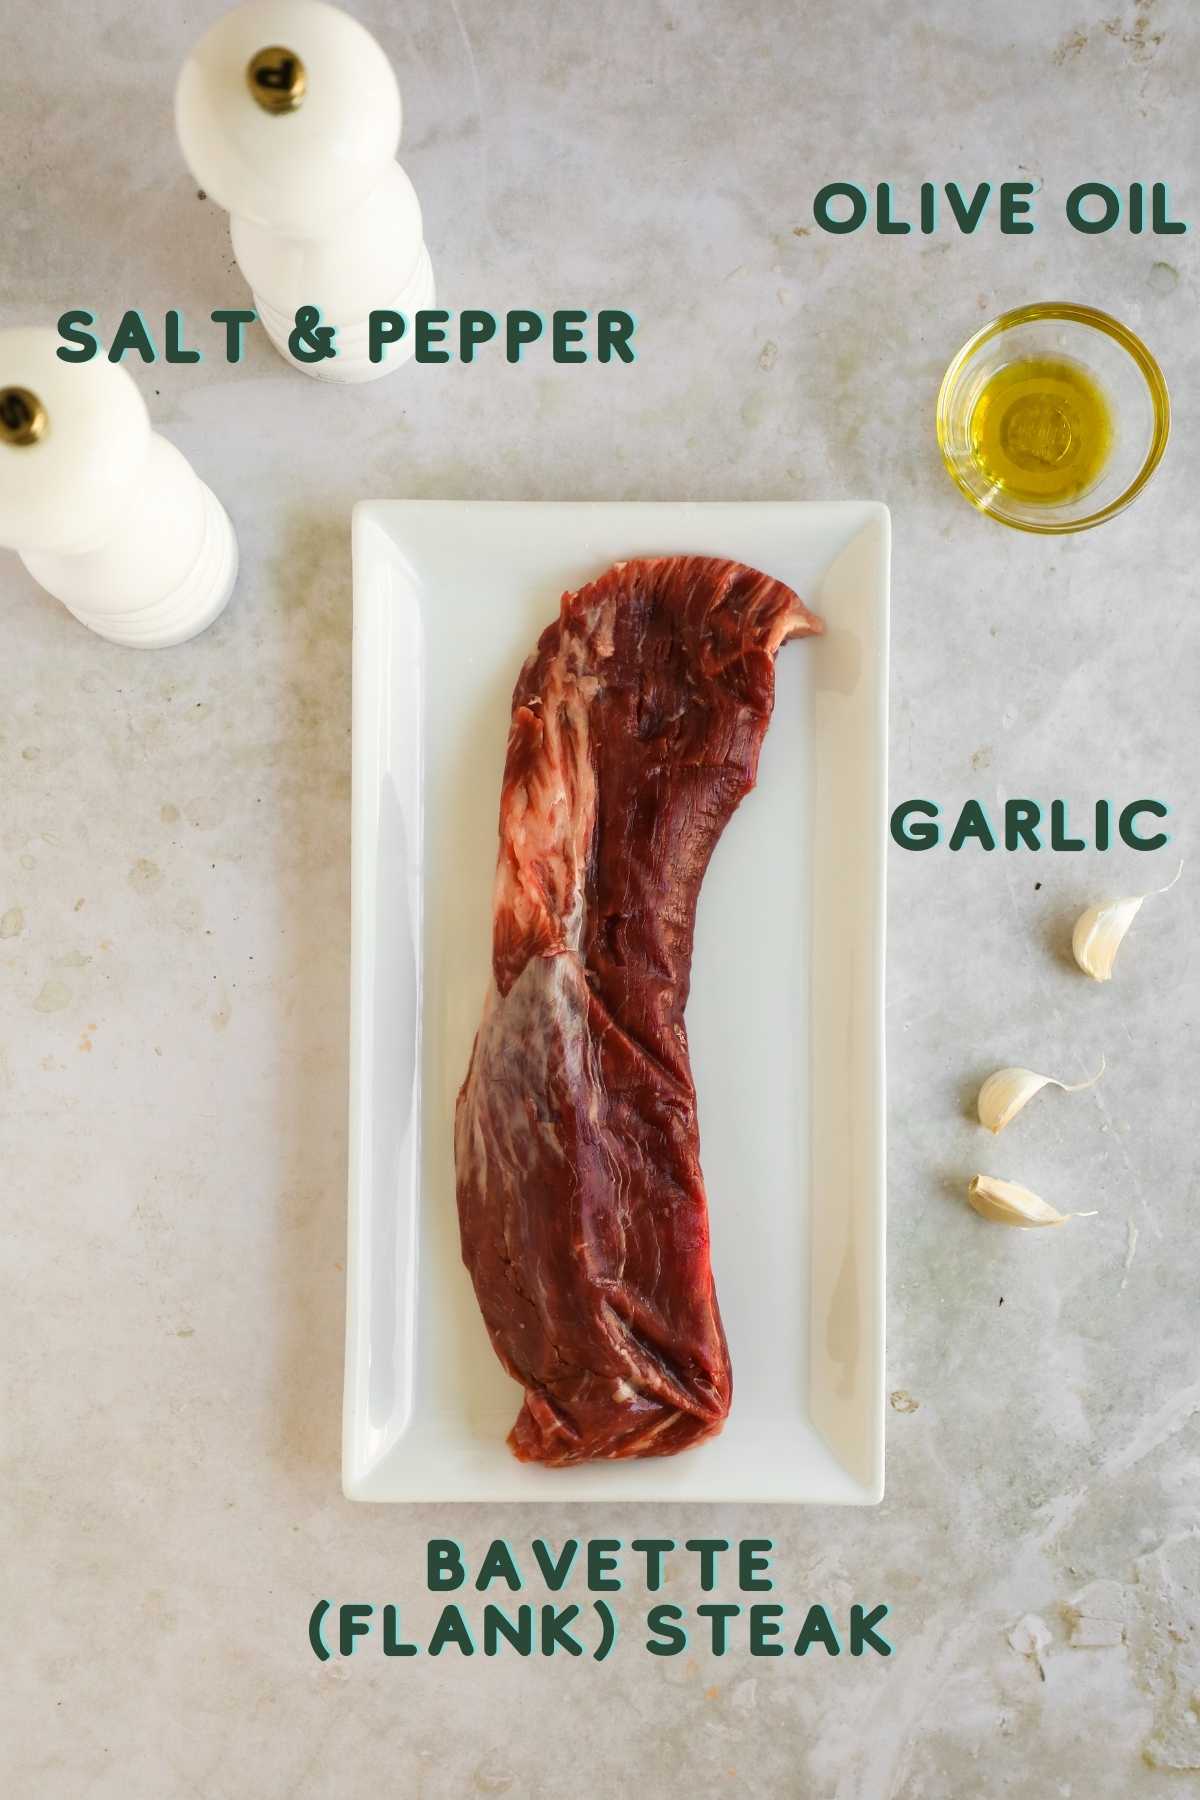 Ingredients to make bavette (flank) steak, including flank steak, garlic, olive oil, salt, and pepper.